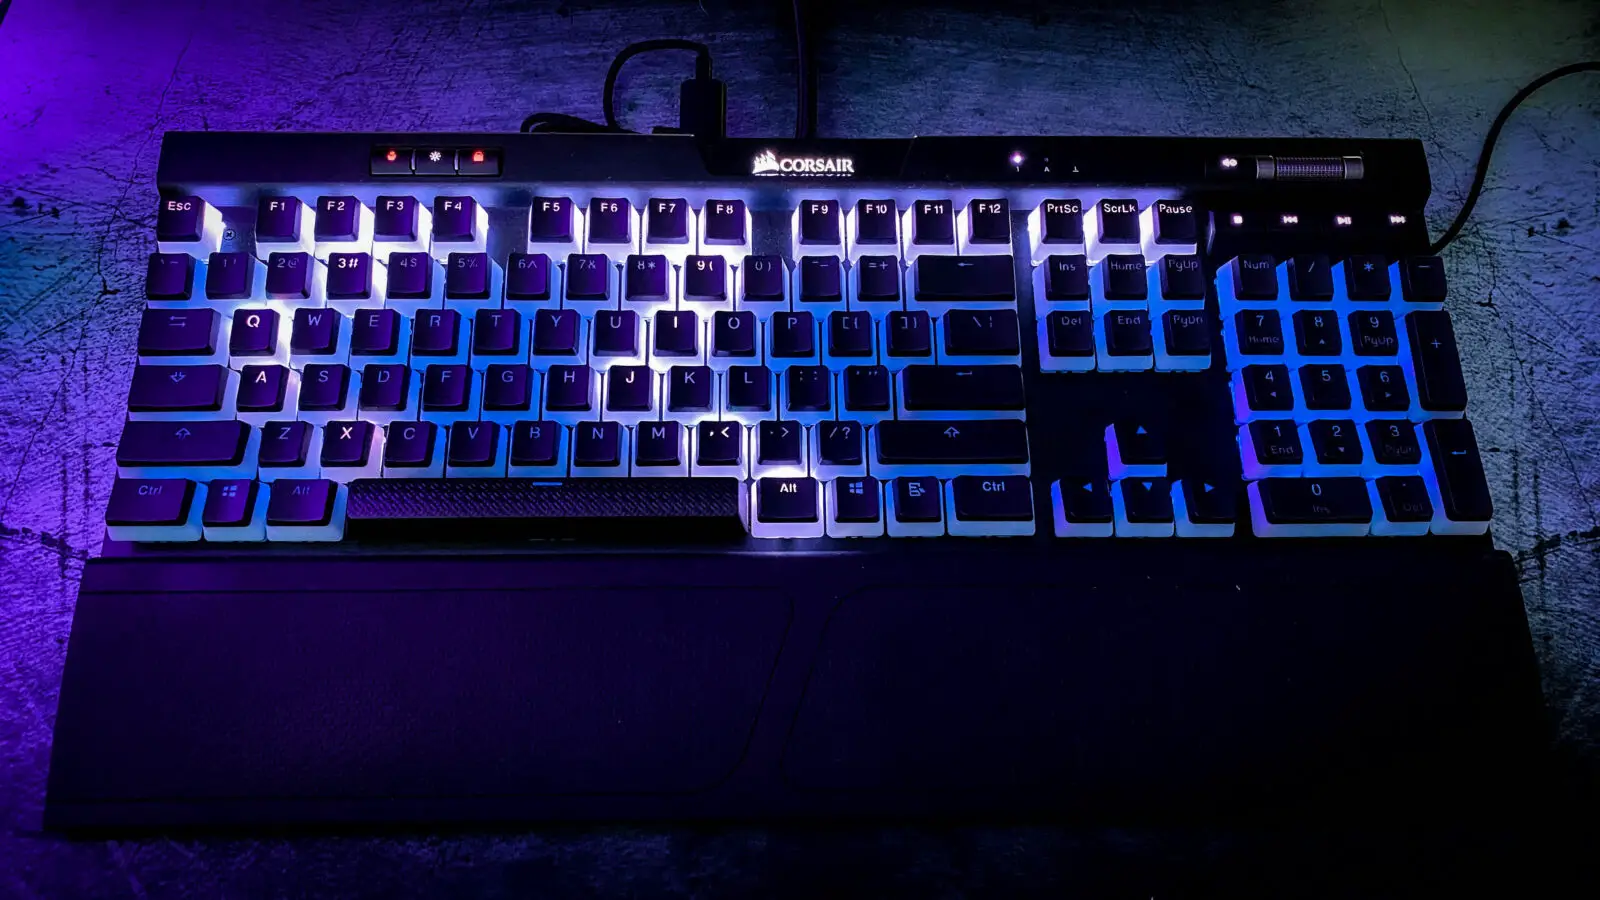 Corsair Lightning Strike RGB keyboard